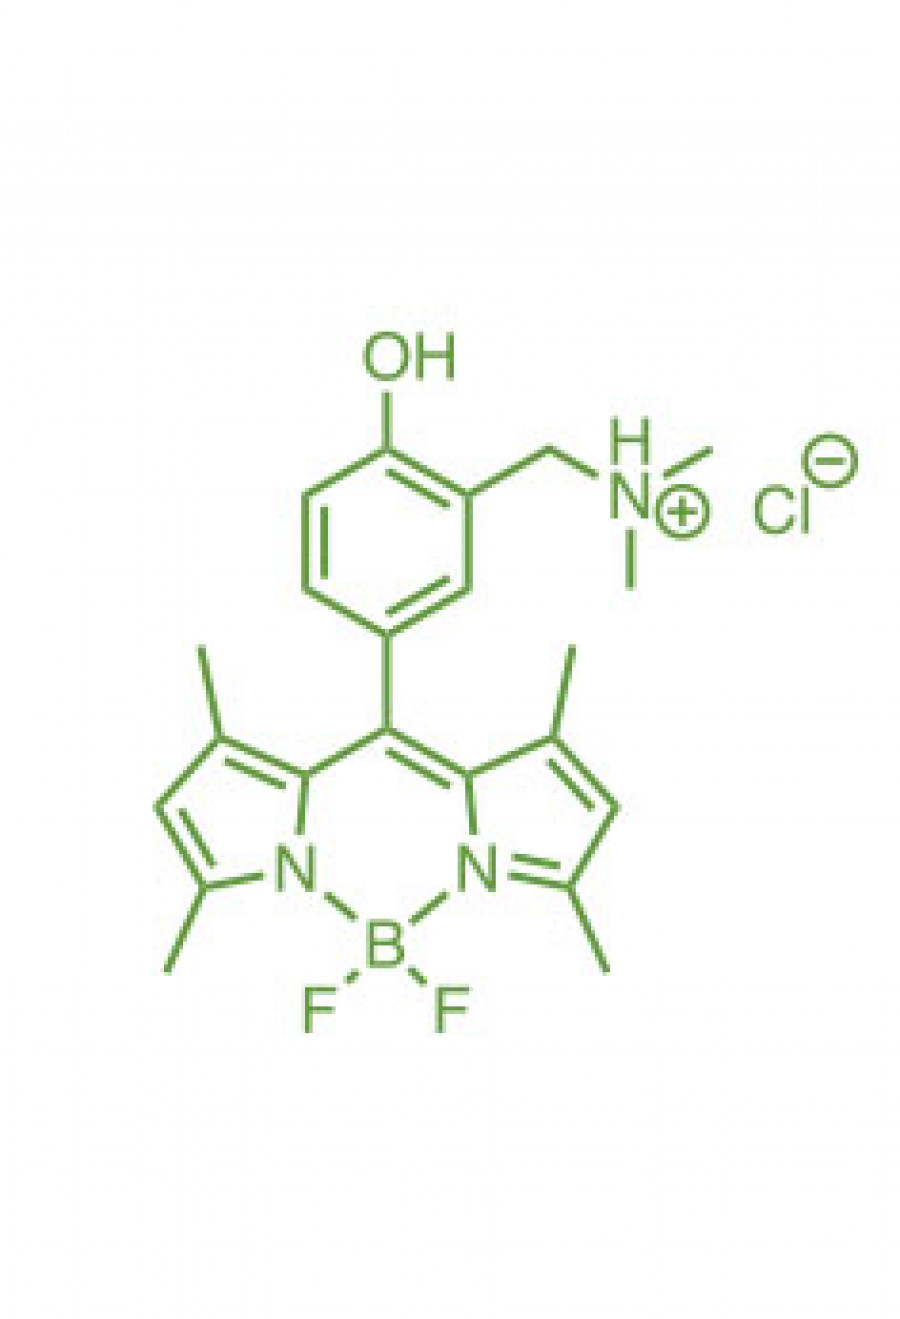 1,3,5,7-tetramethyl-8-(3-(N,N-dimethylaminomethyl)-4-hydroxyphenyl)BODIPY chloride  | Porphychem Expert porphyrin synthesis for research & industry